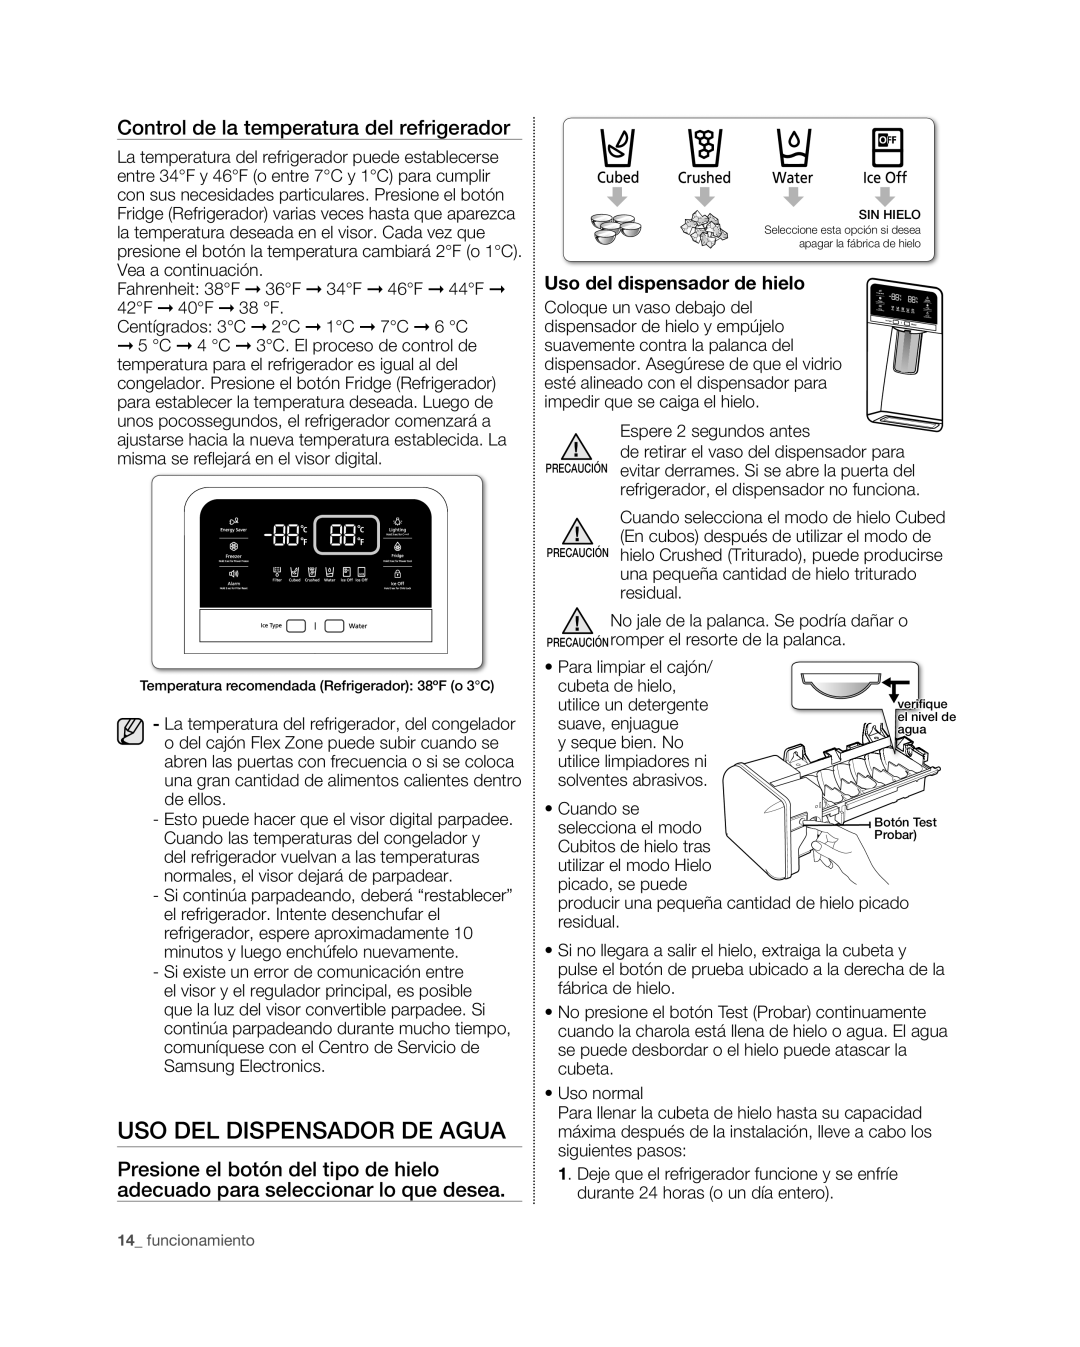 Samsung RFG29PHD Uso Del Dispensador De Agua, Control de la temperatura del refrigerador, Uso del dispensador de hielo 